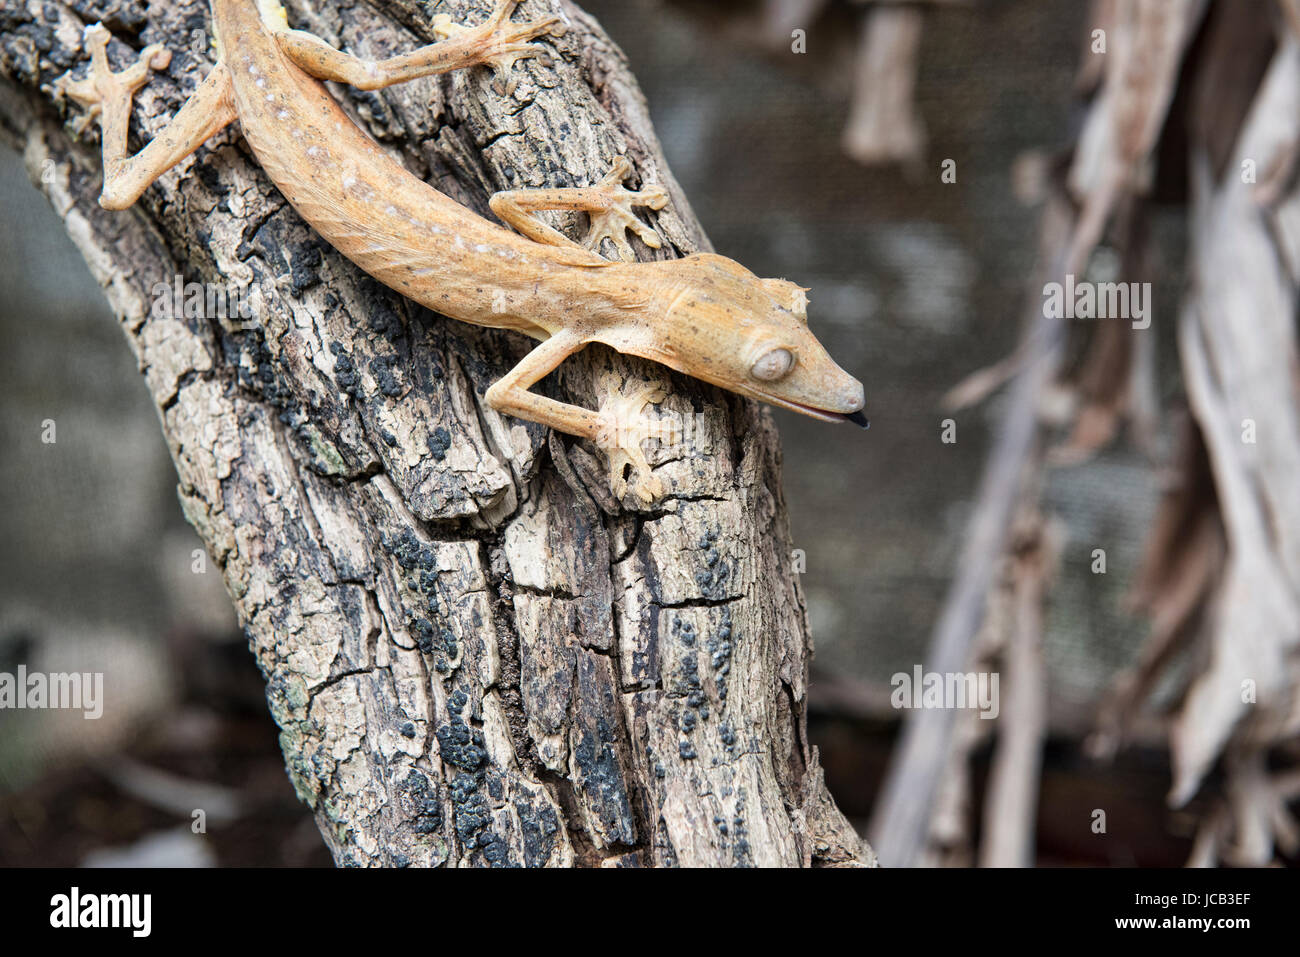 Uroplatus Lineatus Gecko Andasibe-Mantadia Nationalpark, Madagaskar Stockfoto